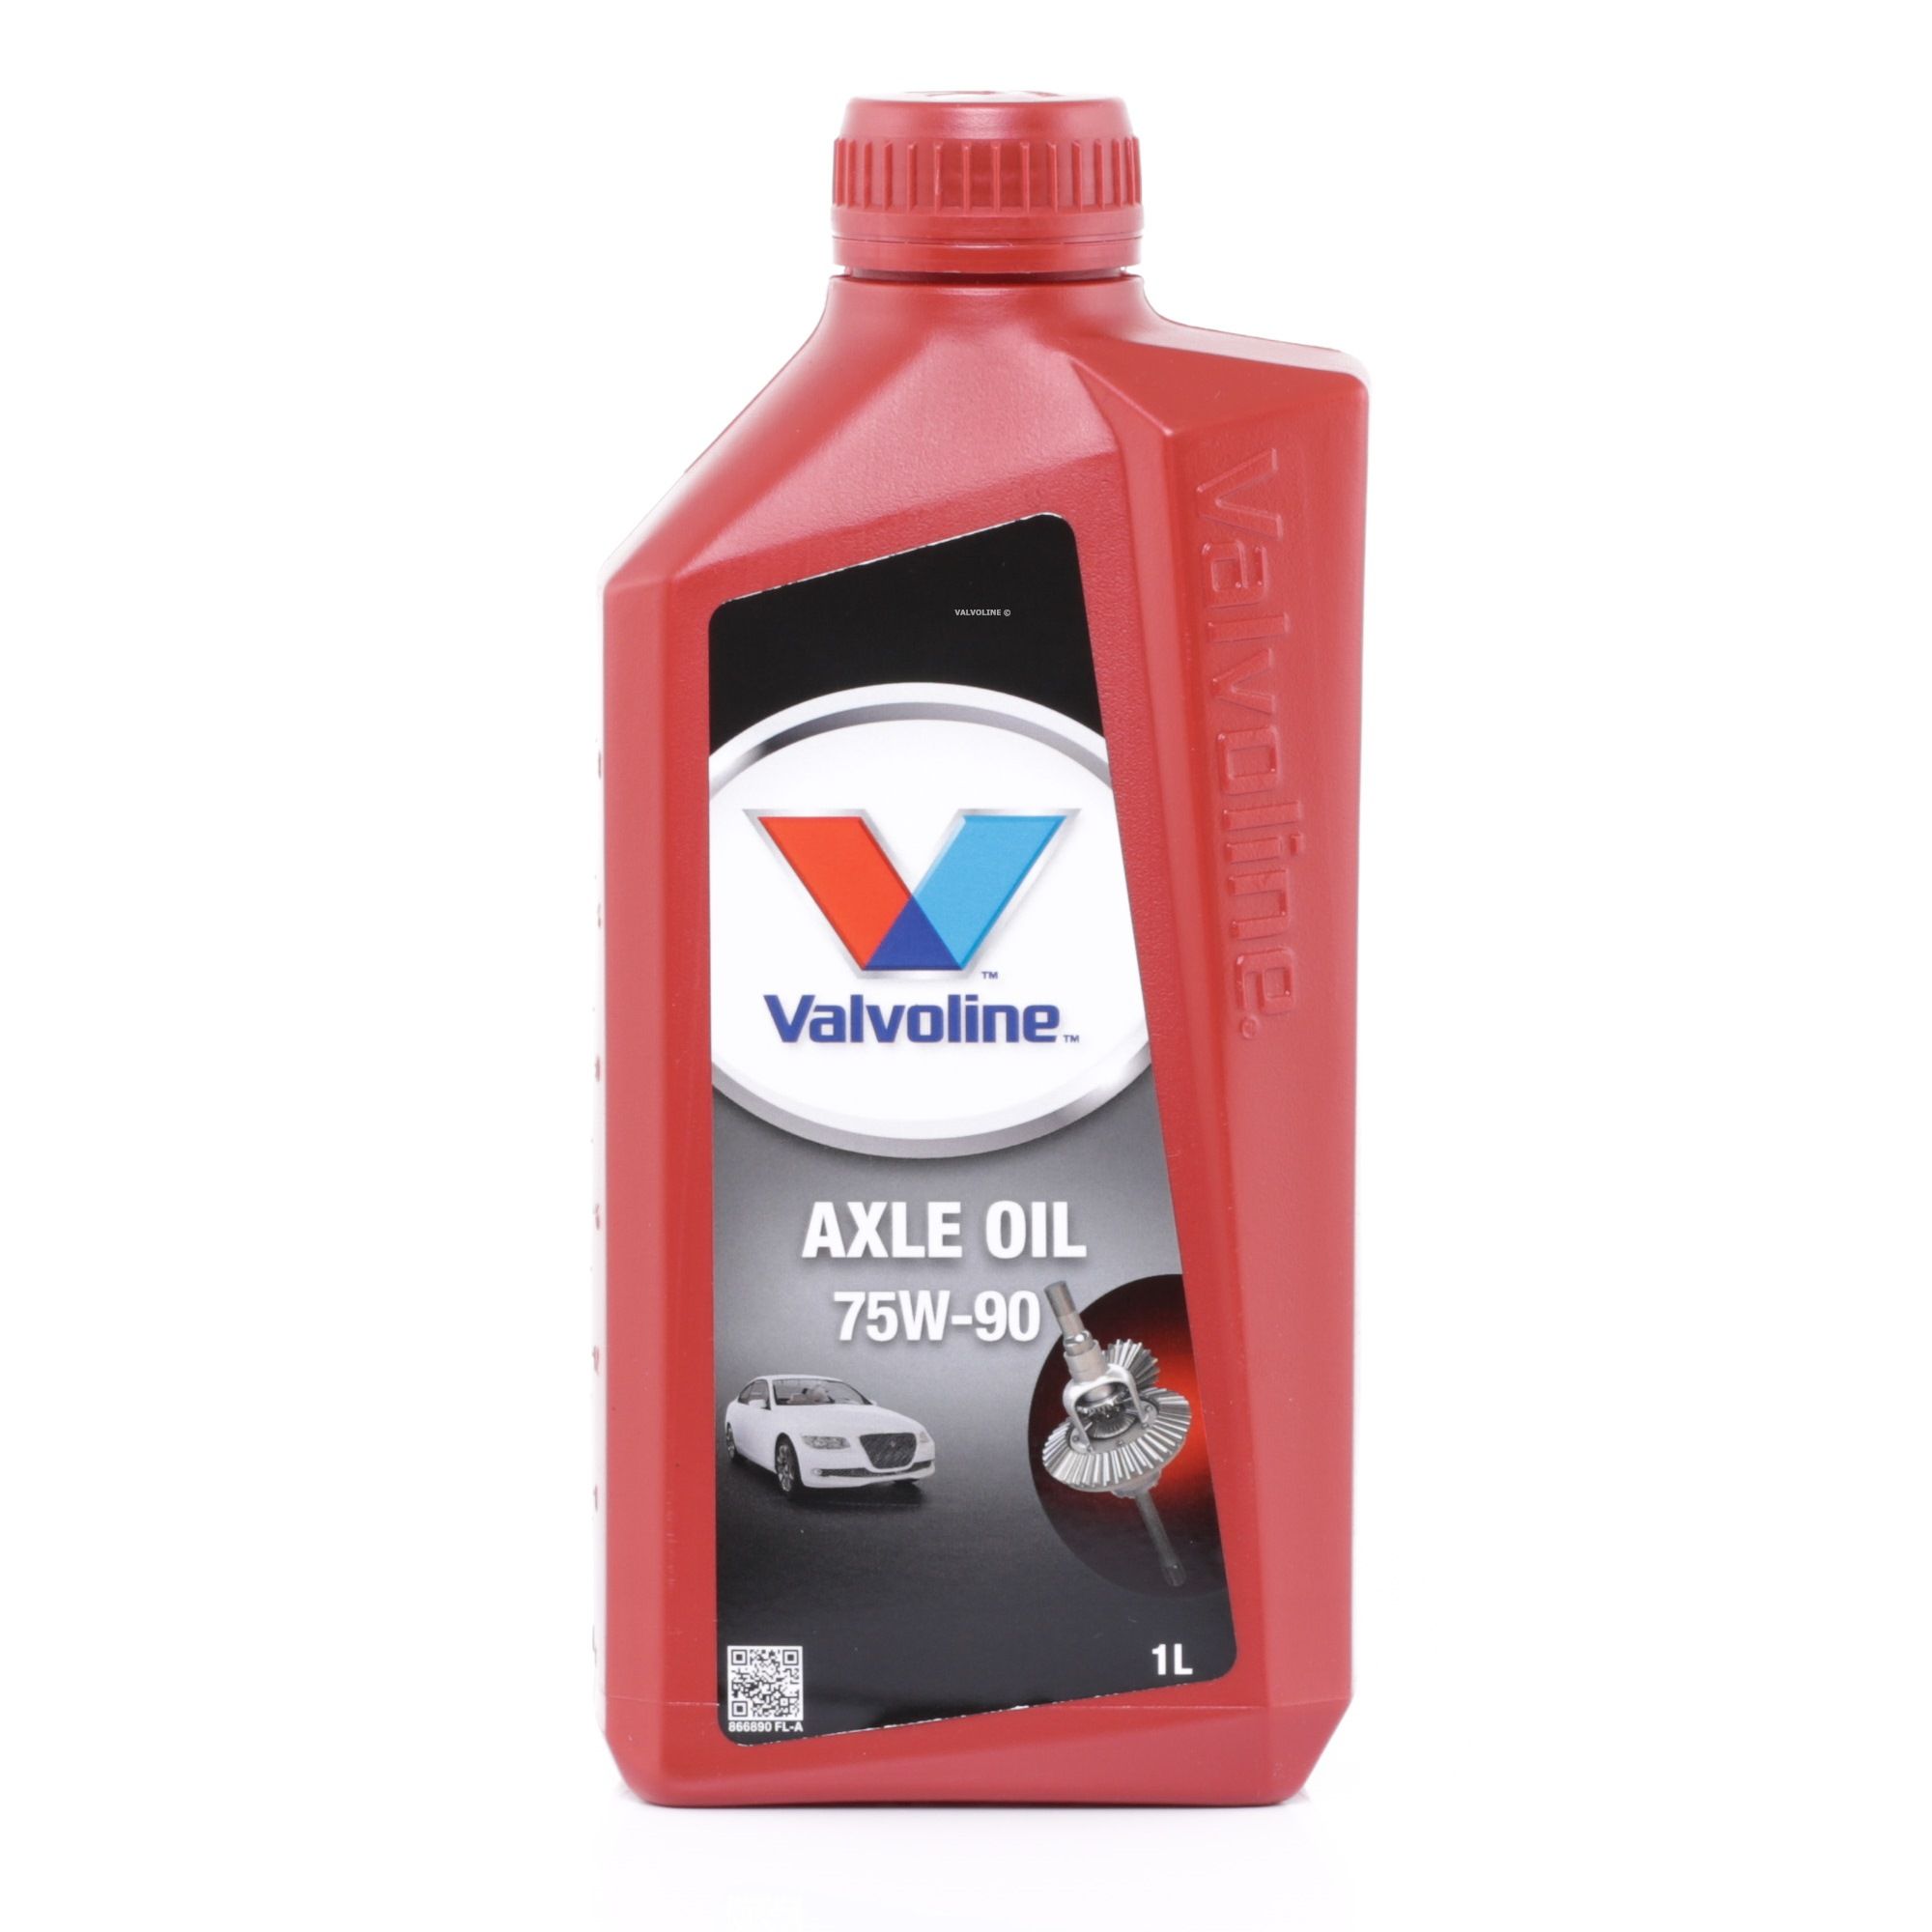 866890 Valvoline Axle Oil 75W-90, Inhalt: 1l Getriebeöl 866890 günstig kaufen